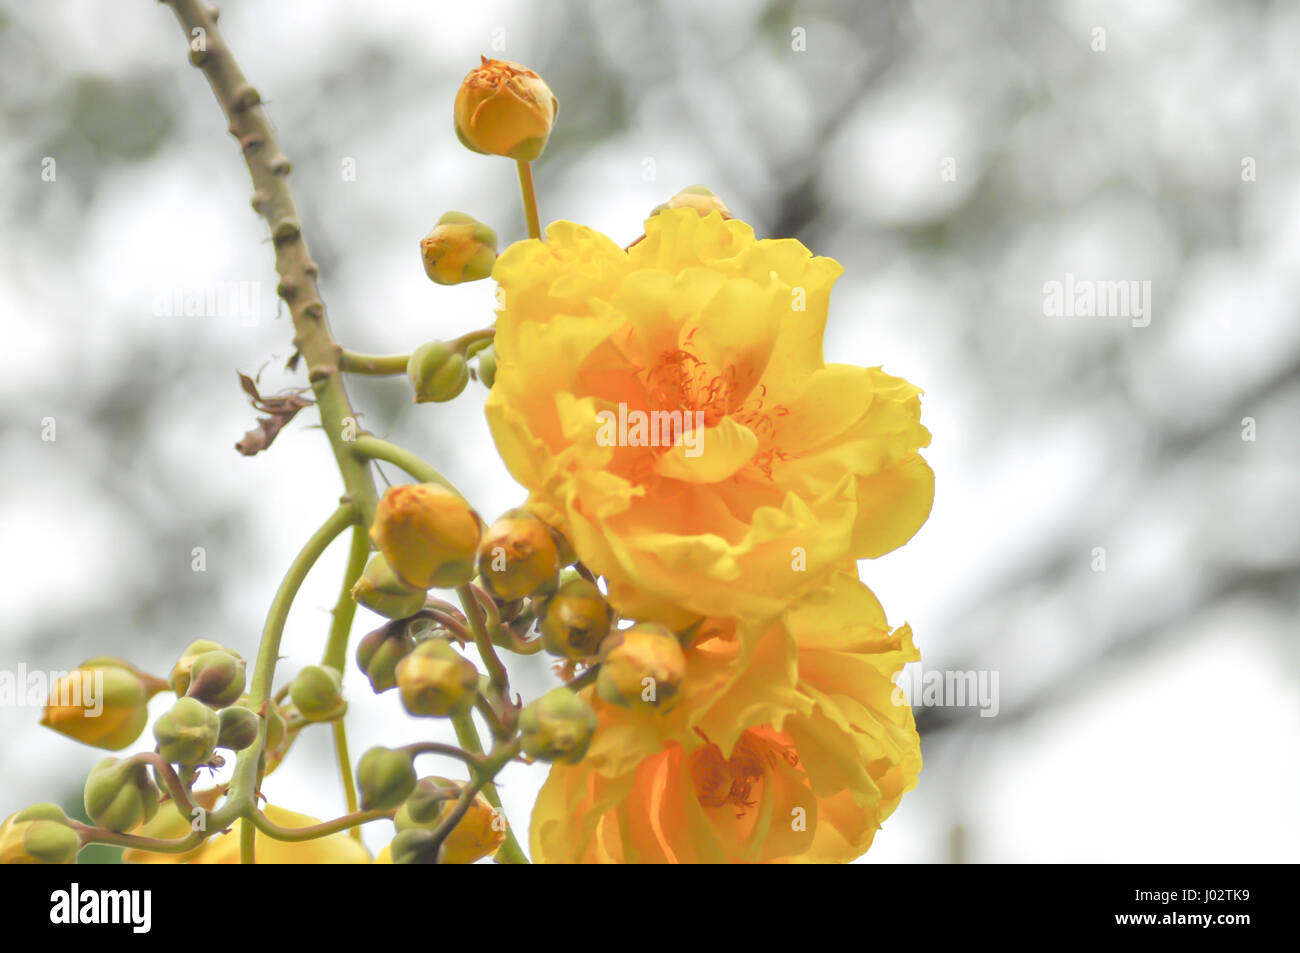 Cochlospermum regium or yellow flower in the garden Stock Photo